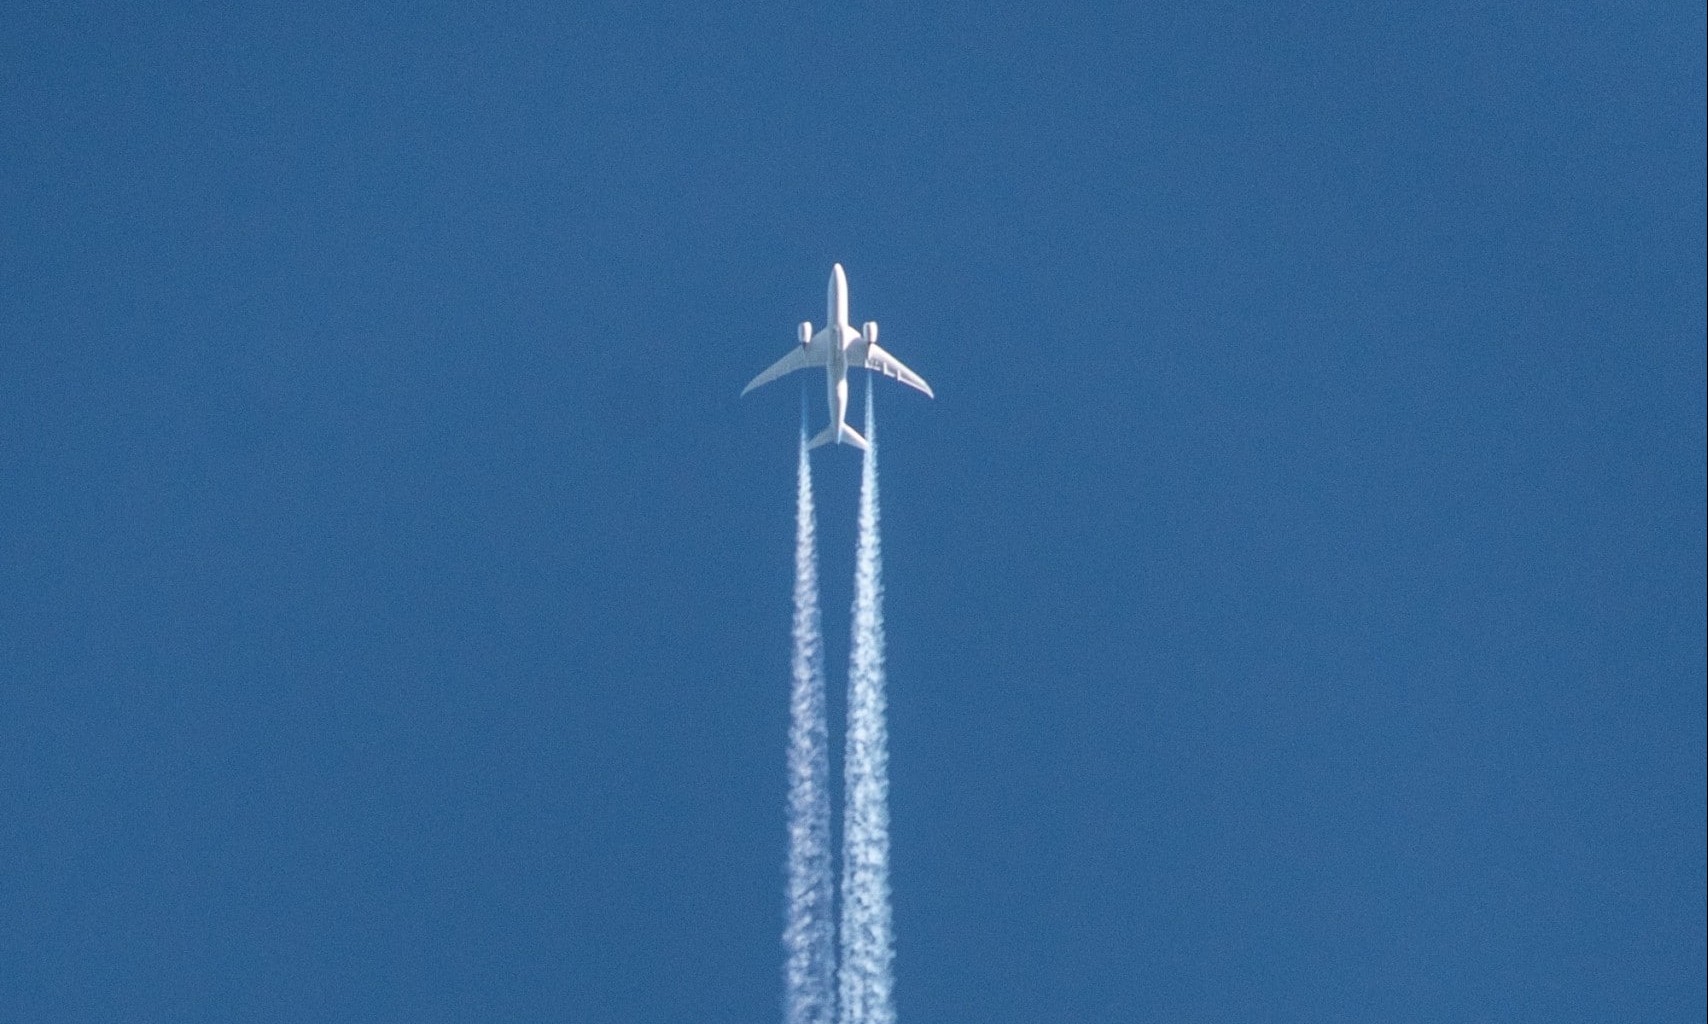 Klimaneutrales Fliegen oder den Flug kompensieren - geht das? Zu sehen ist ein Flugzeug vor einem blauen Himmel